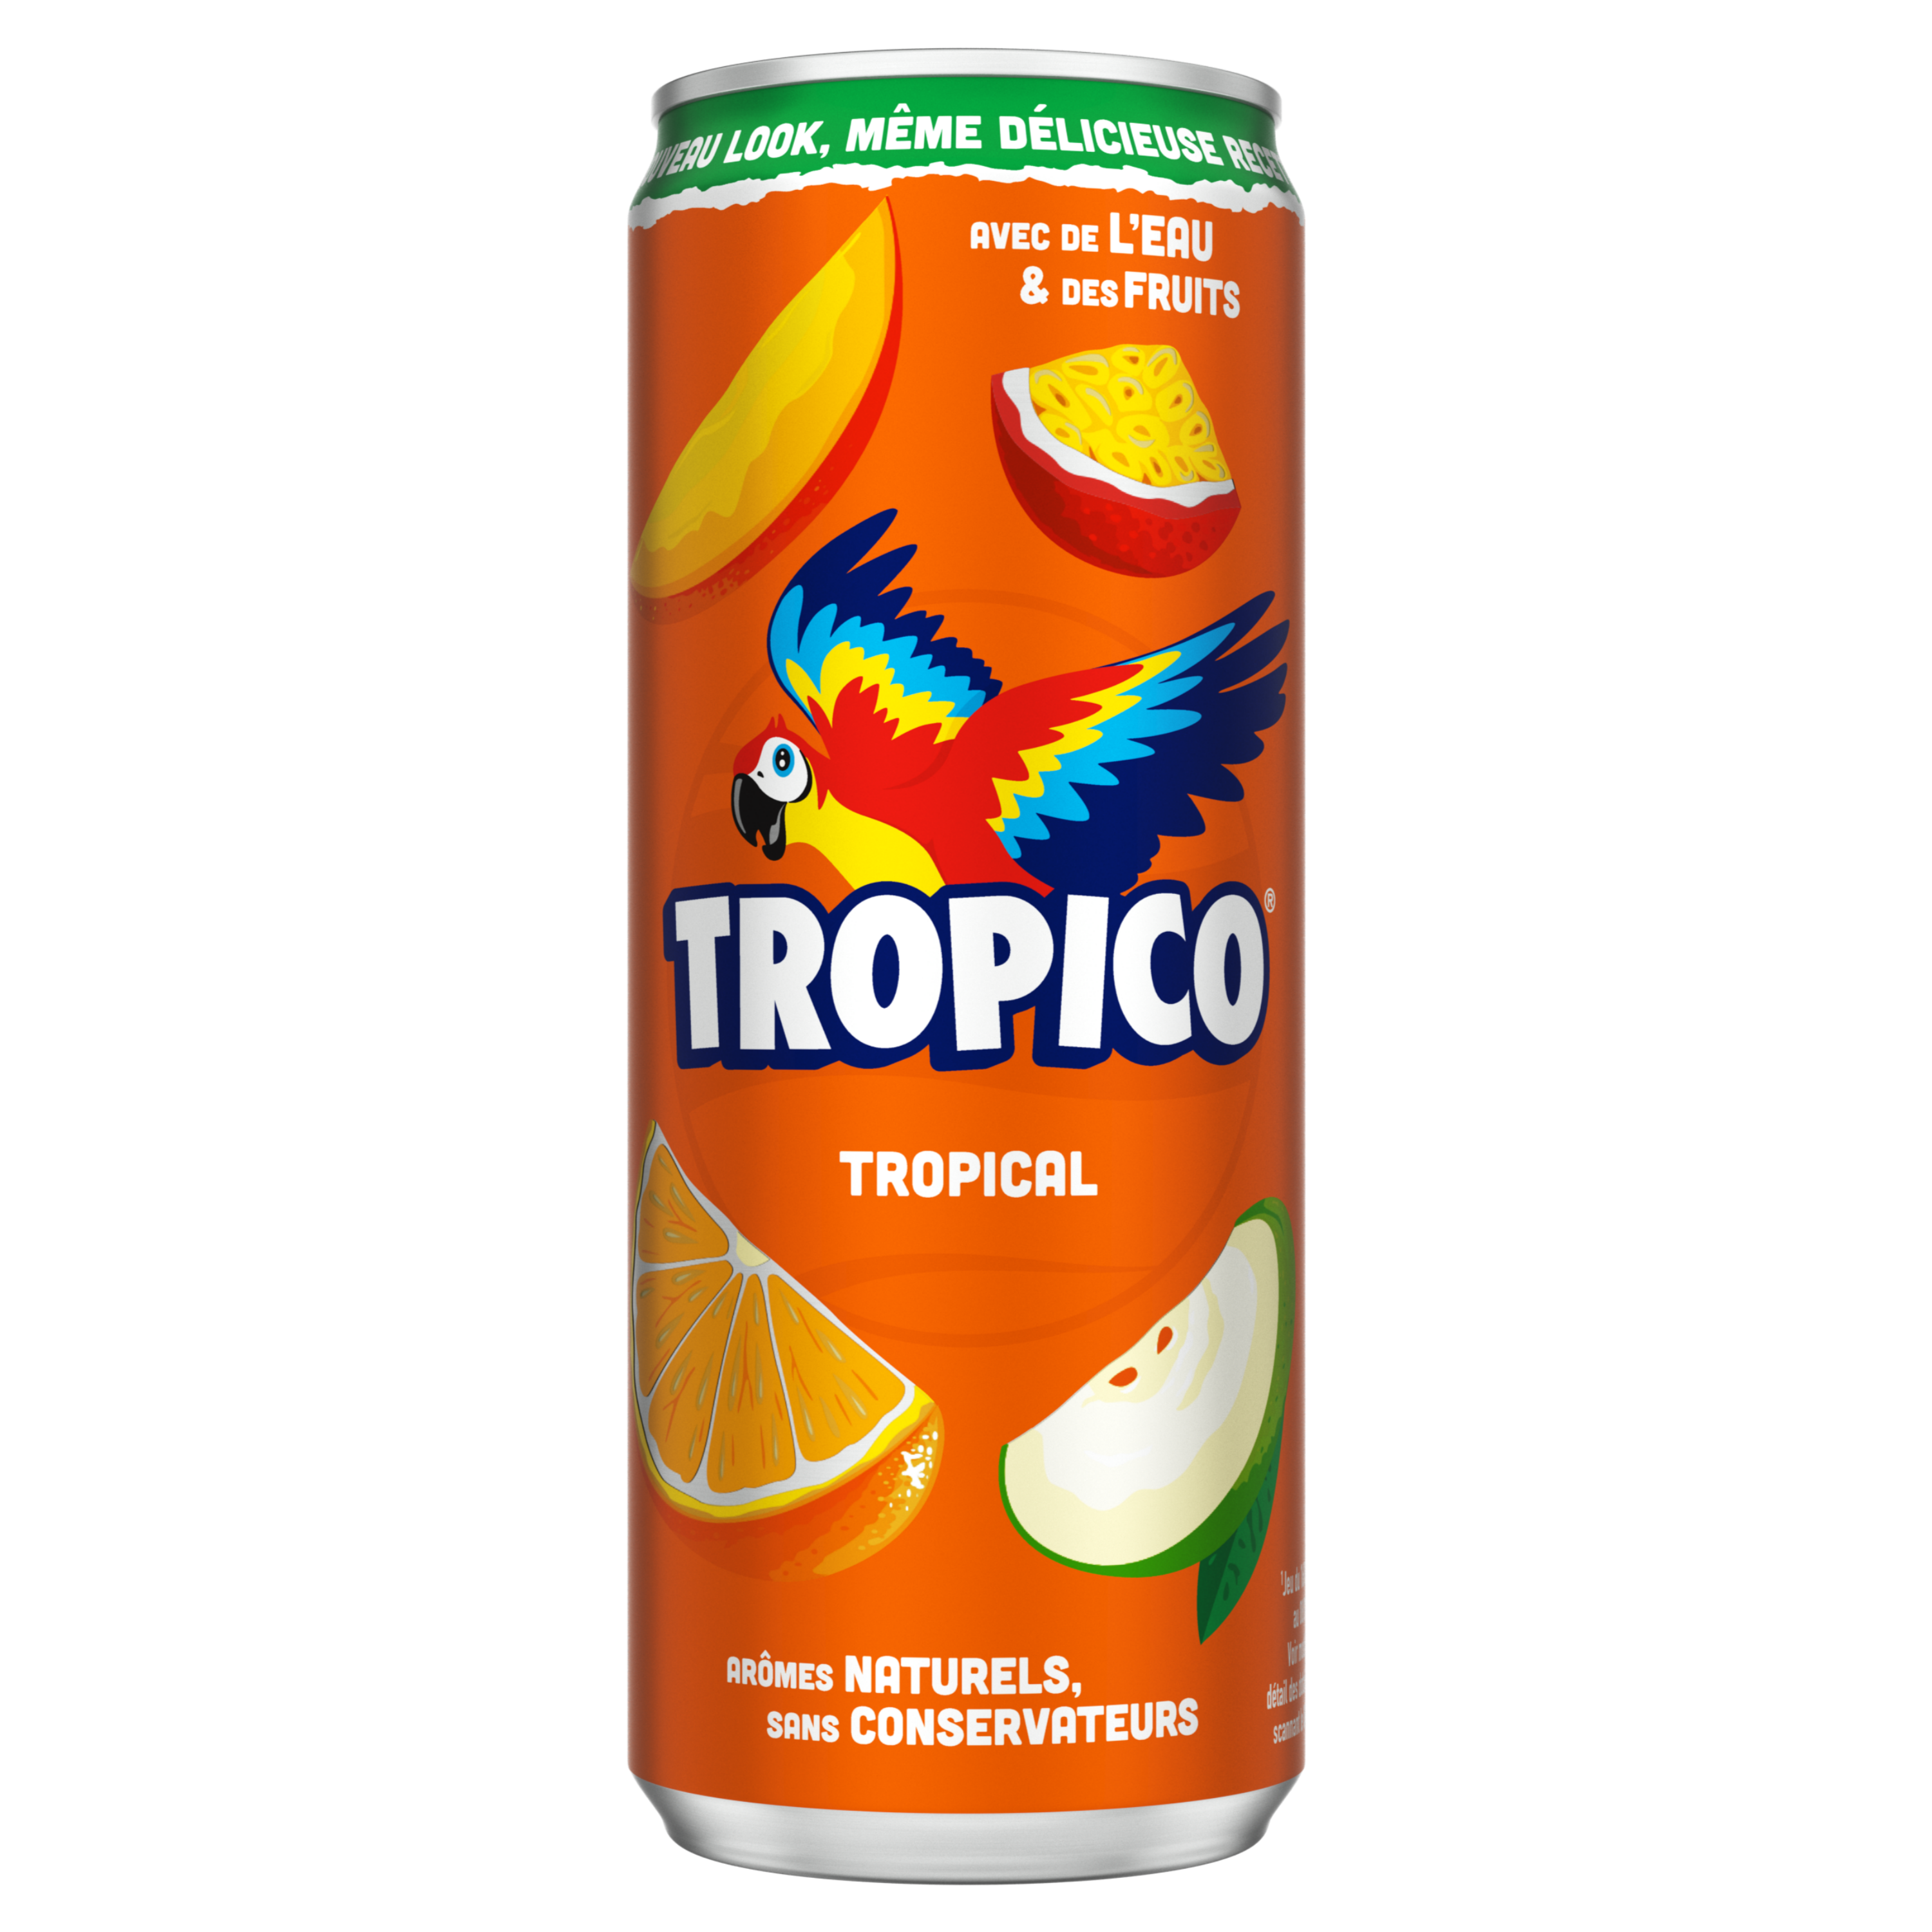 Canette de Tropico Tropical saveur Tropical